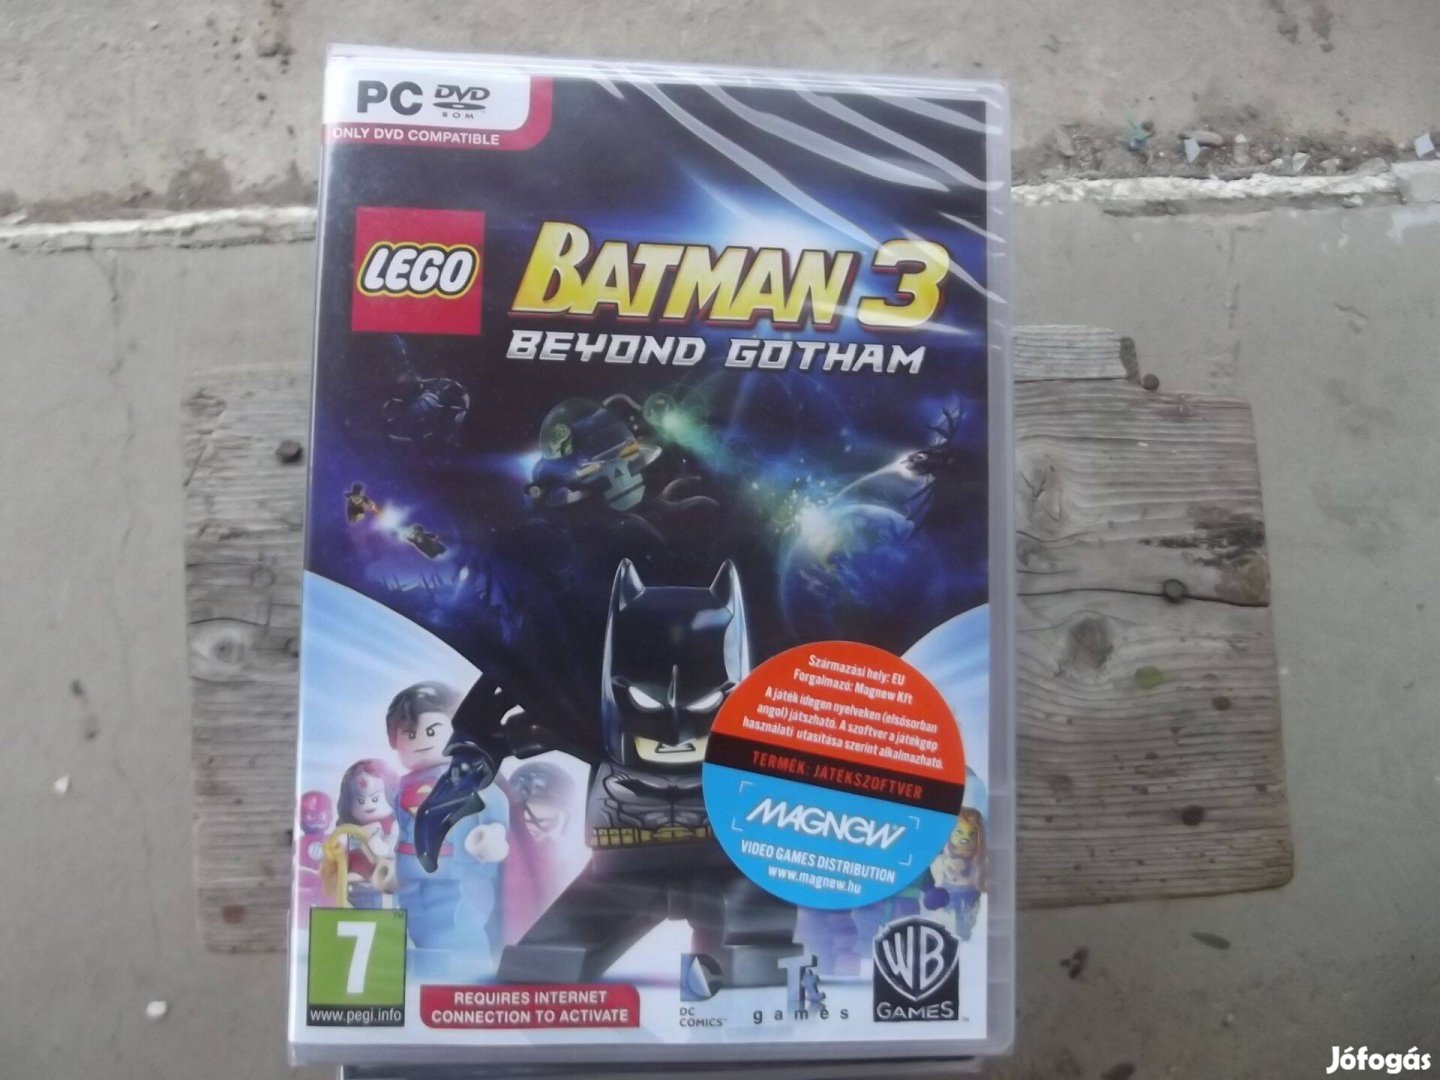 Pc-51 Pc eredeti Játék : Lego Batman 3. Beyond Gotham Új Bonta